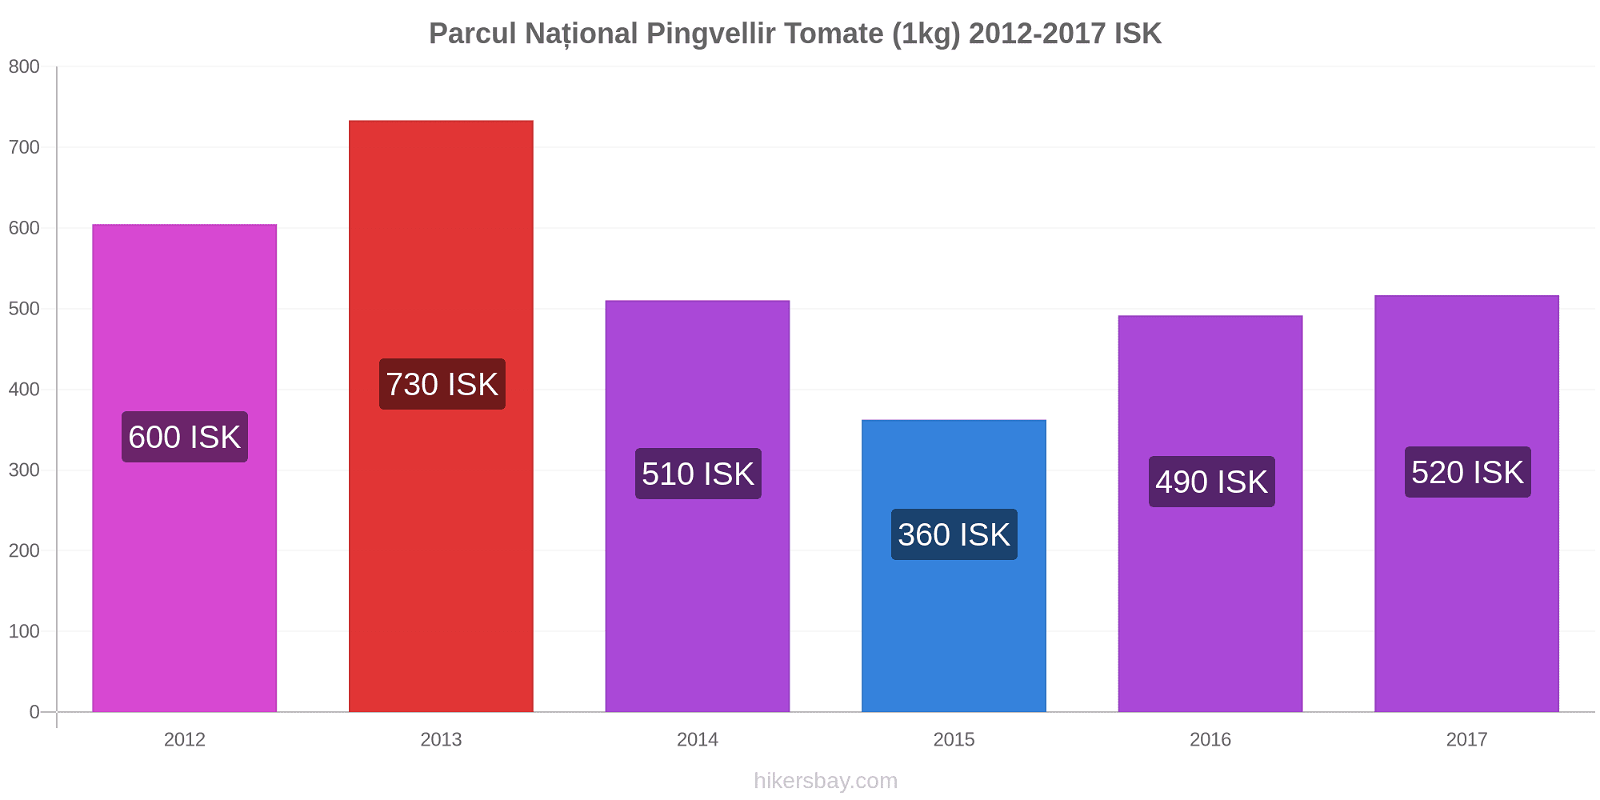 Parcul Național Pingvellir modificări de preț Tomate (1kg) hikersbay.com